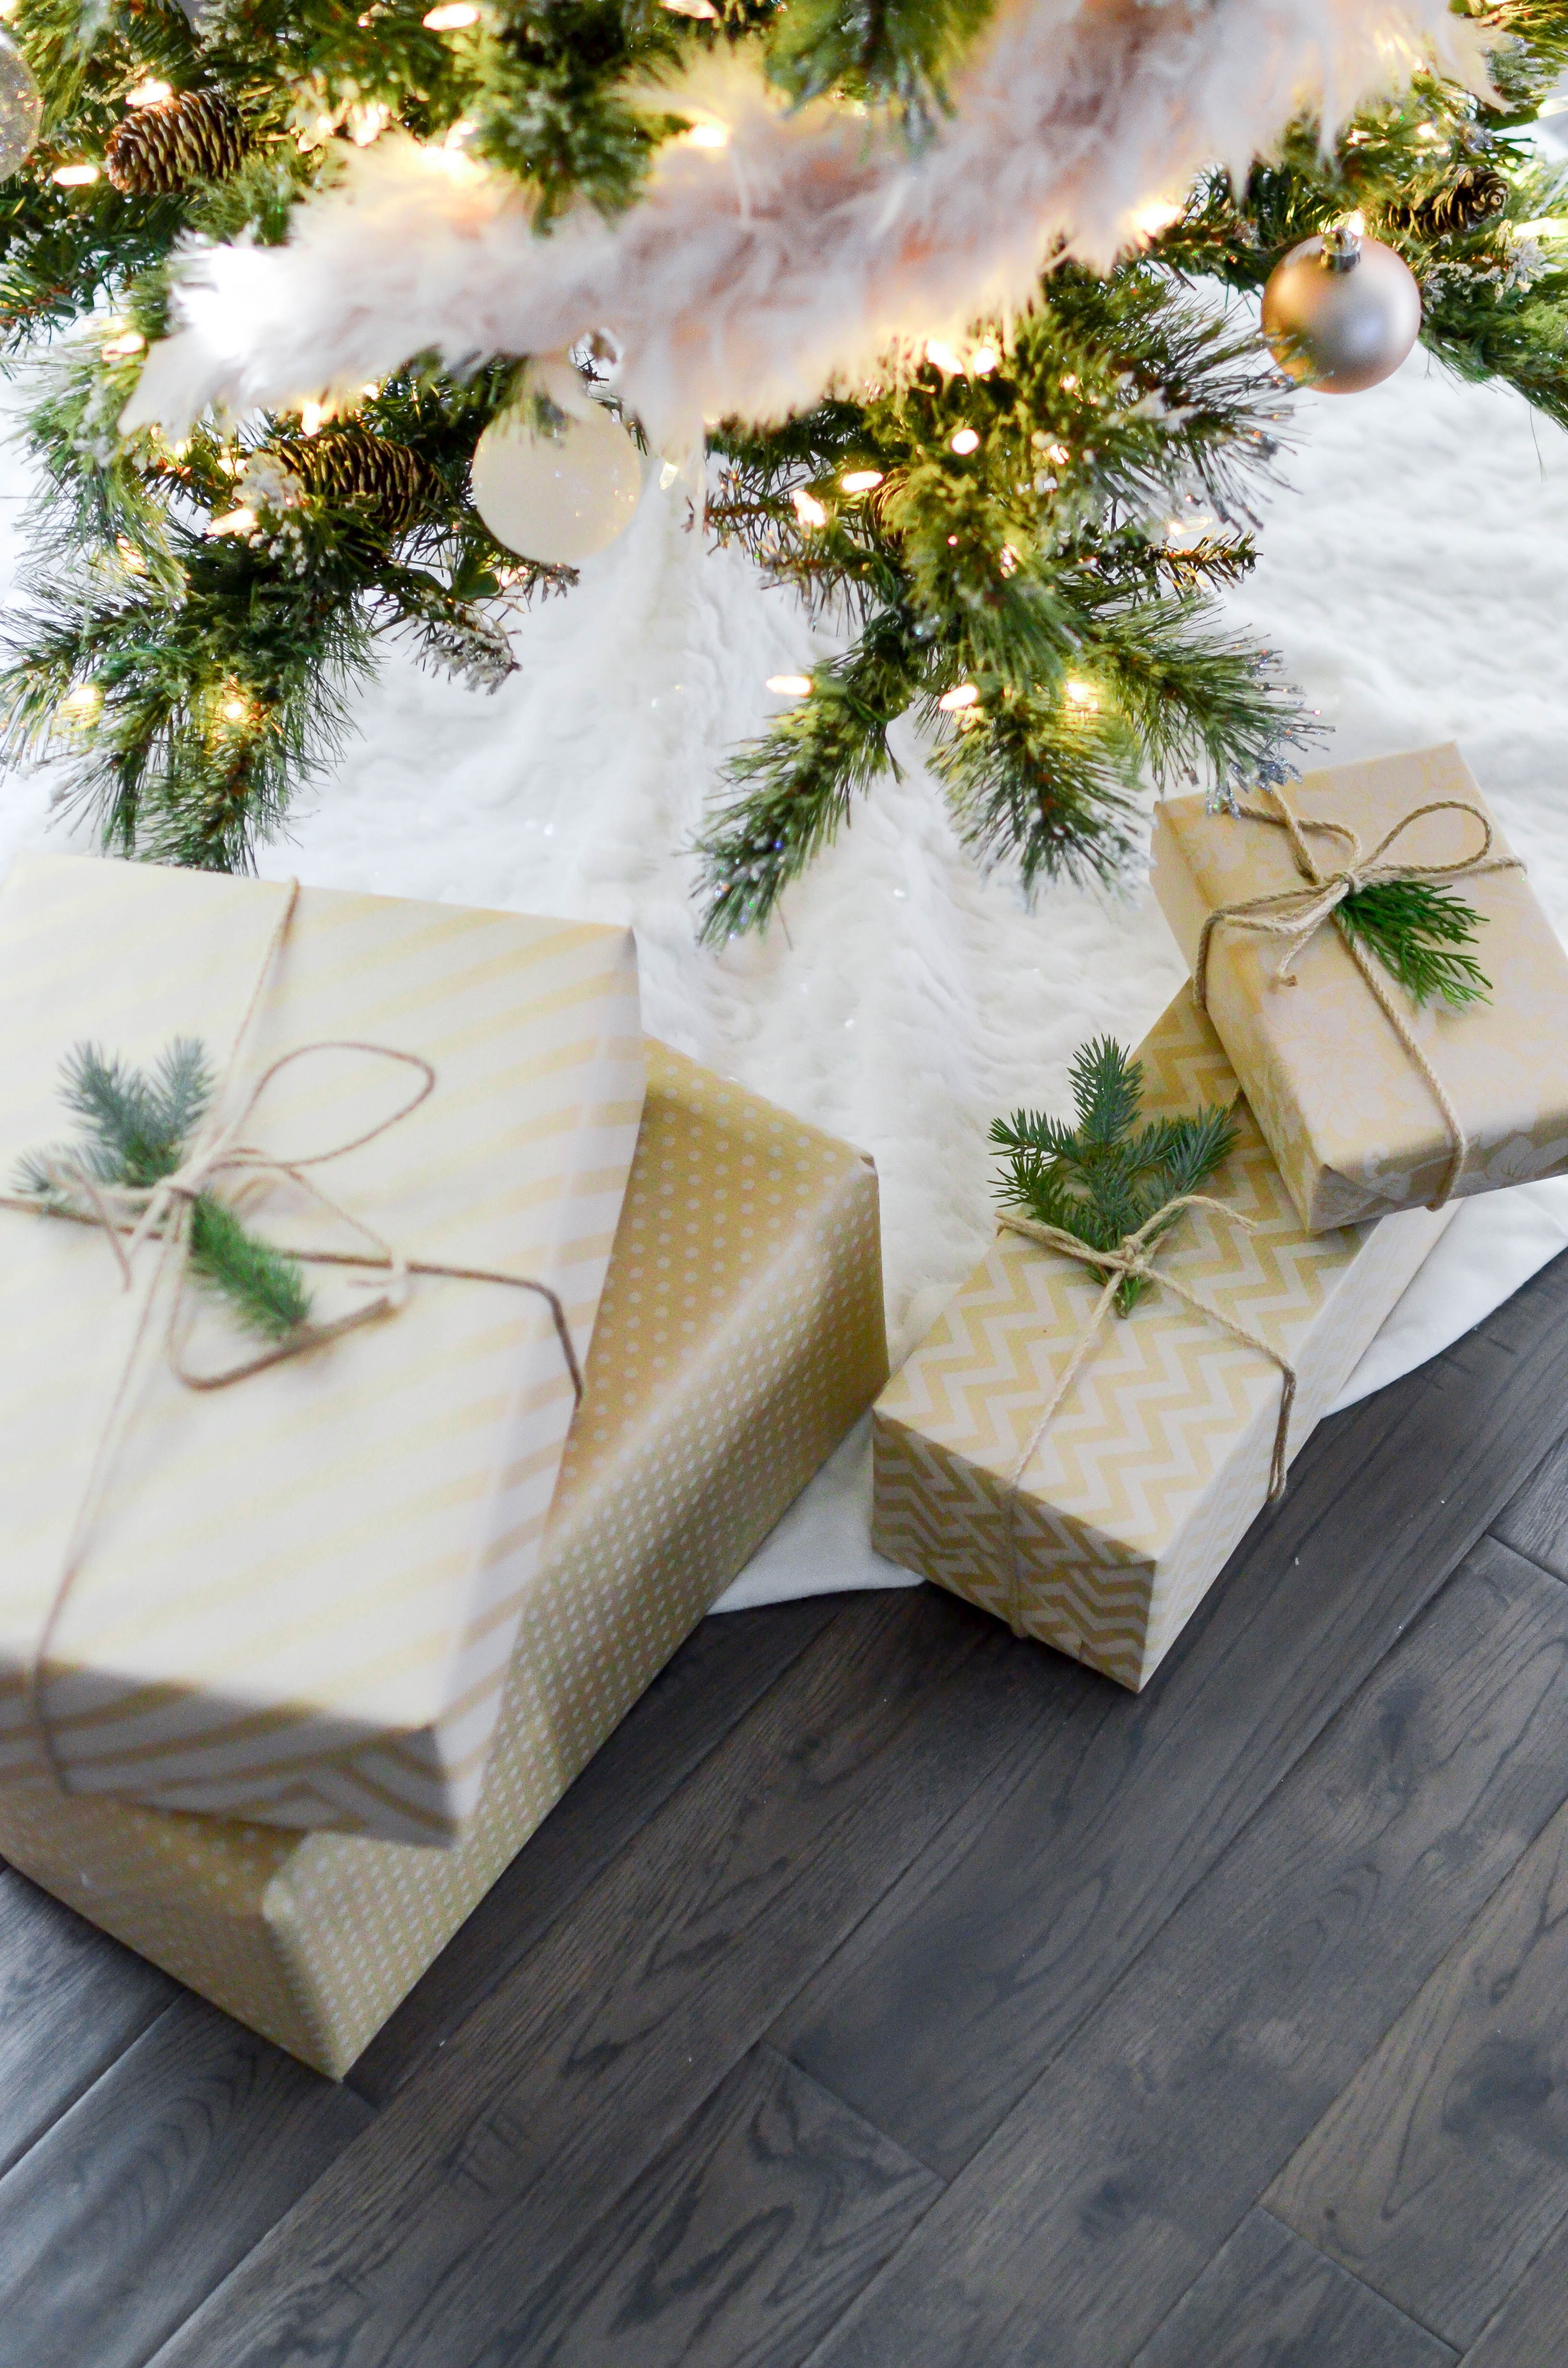 Οδηγός επιβίωσης για το τέλειο χριστουγεννιάτικο δώρο- 5 tips για σωστές αγορές